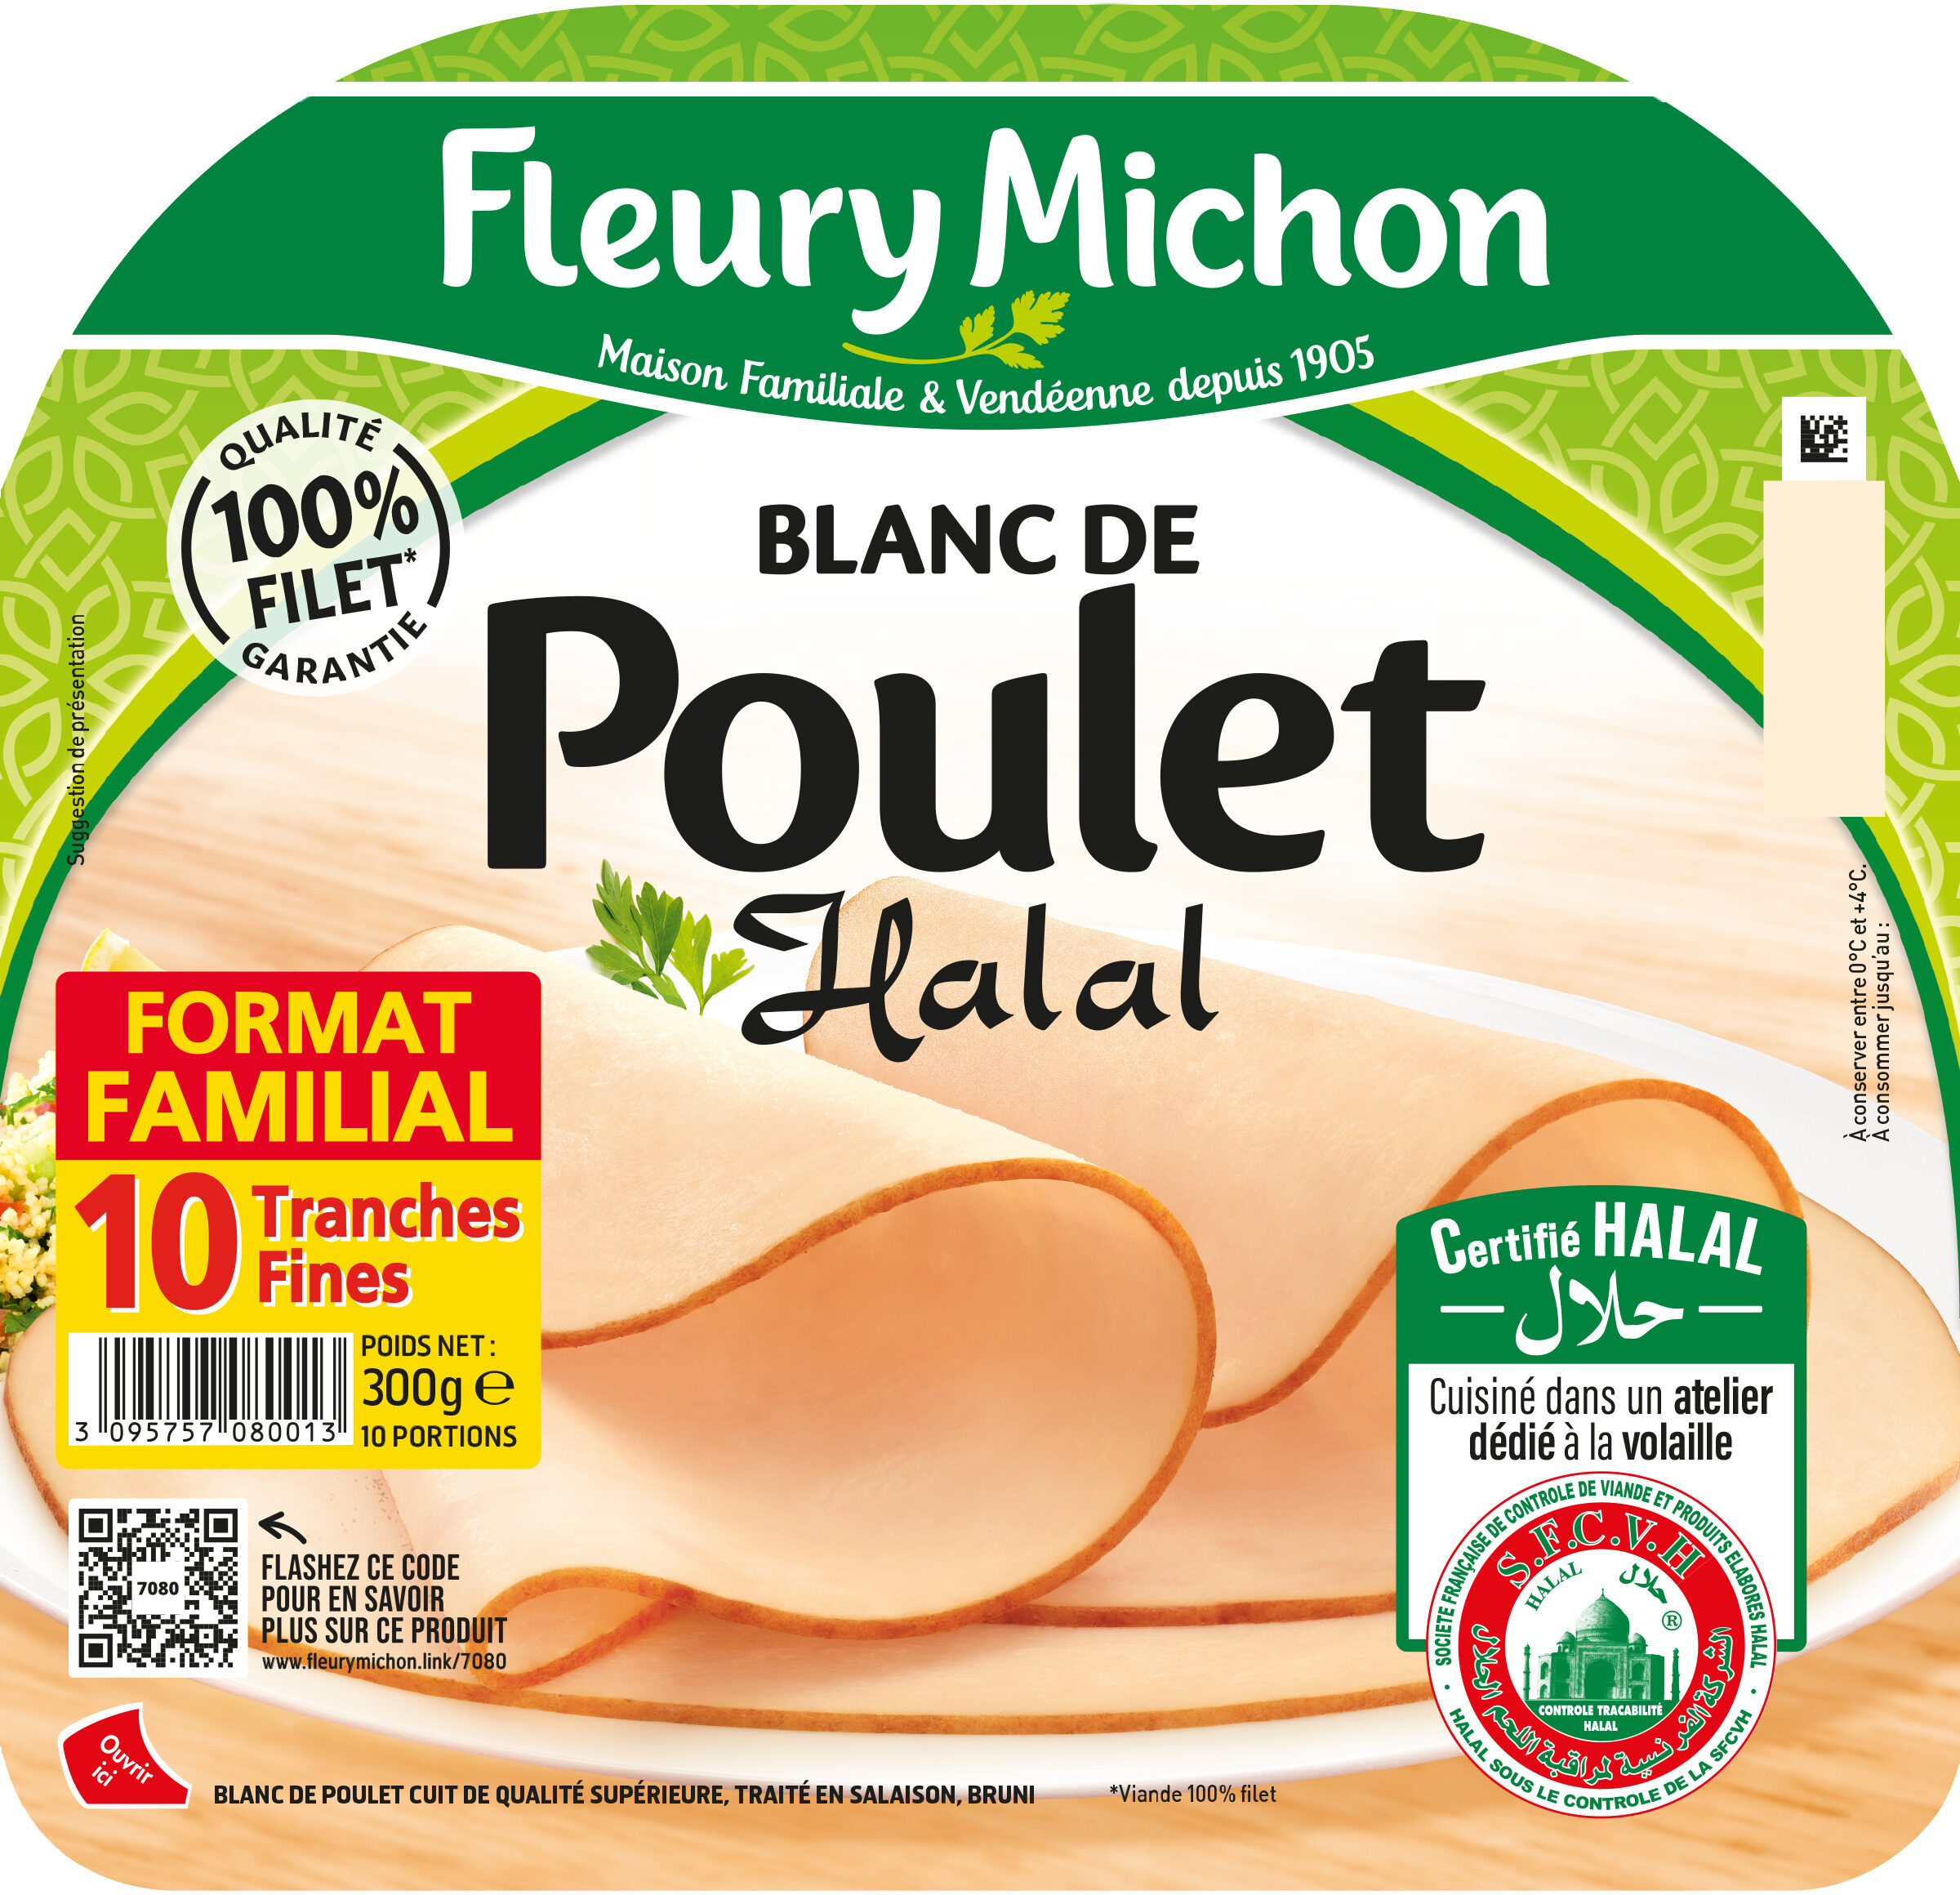 Blanc de Poulet - Halal - Product - fr